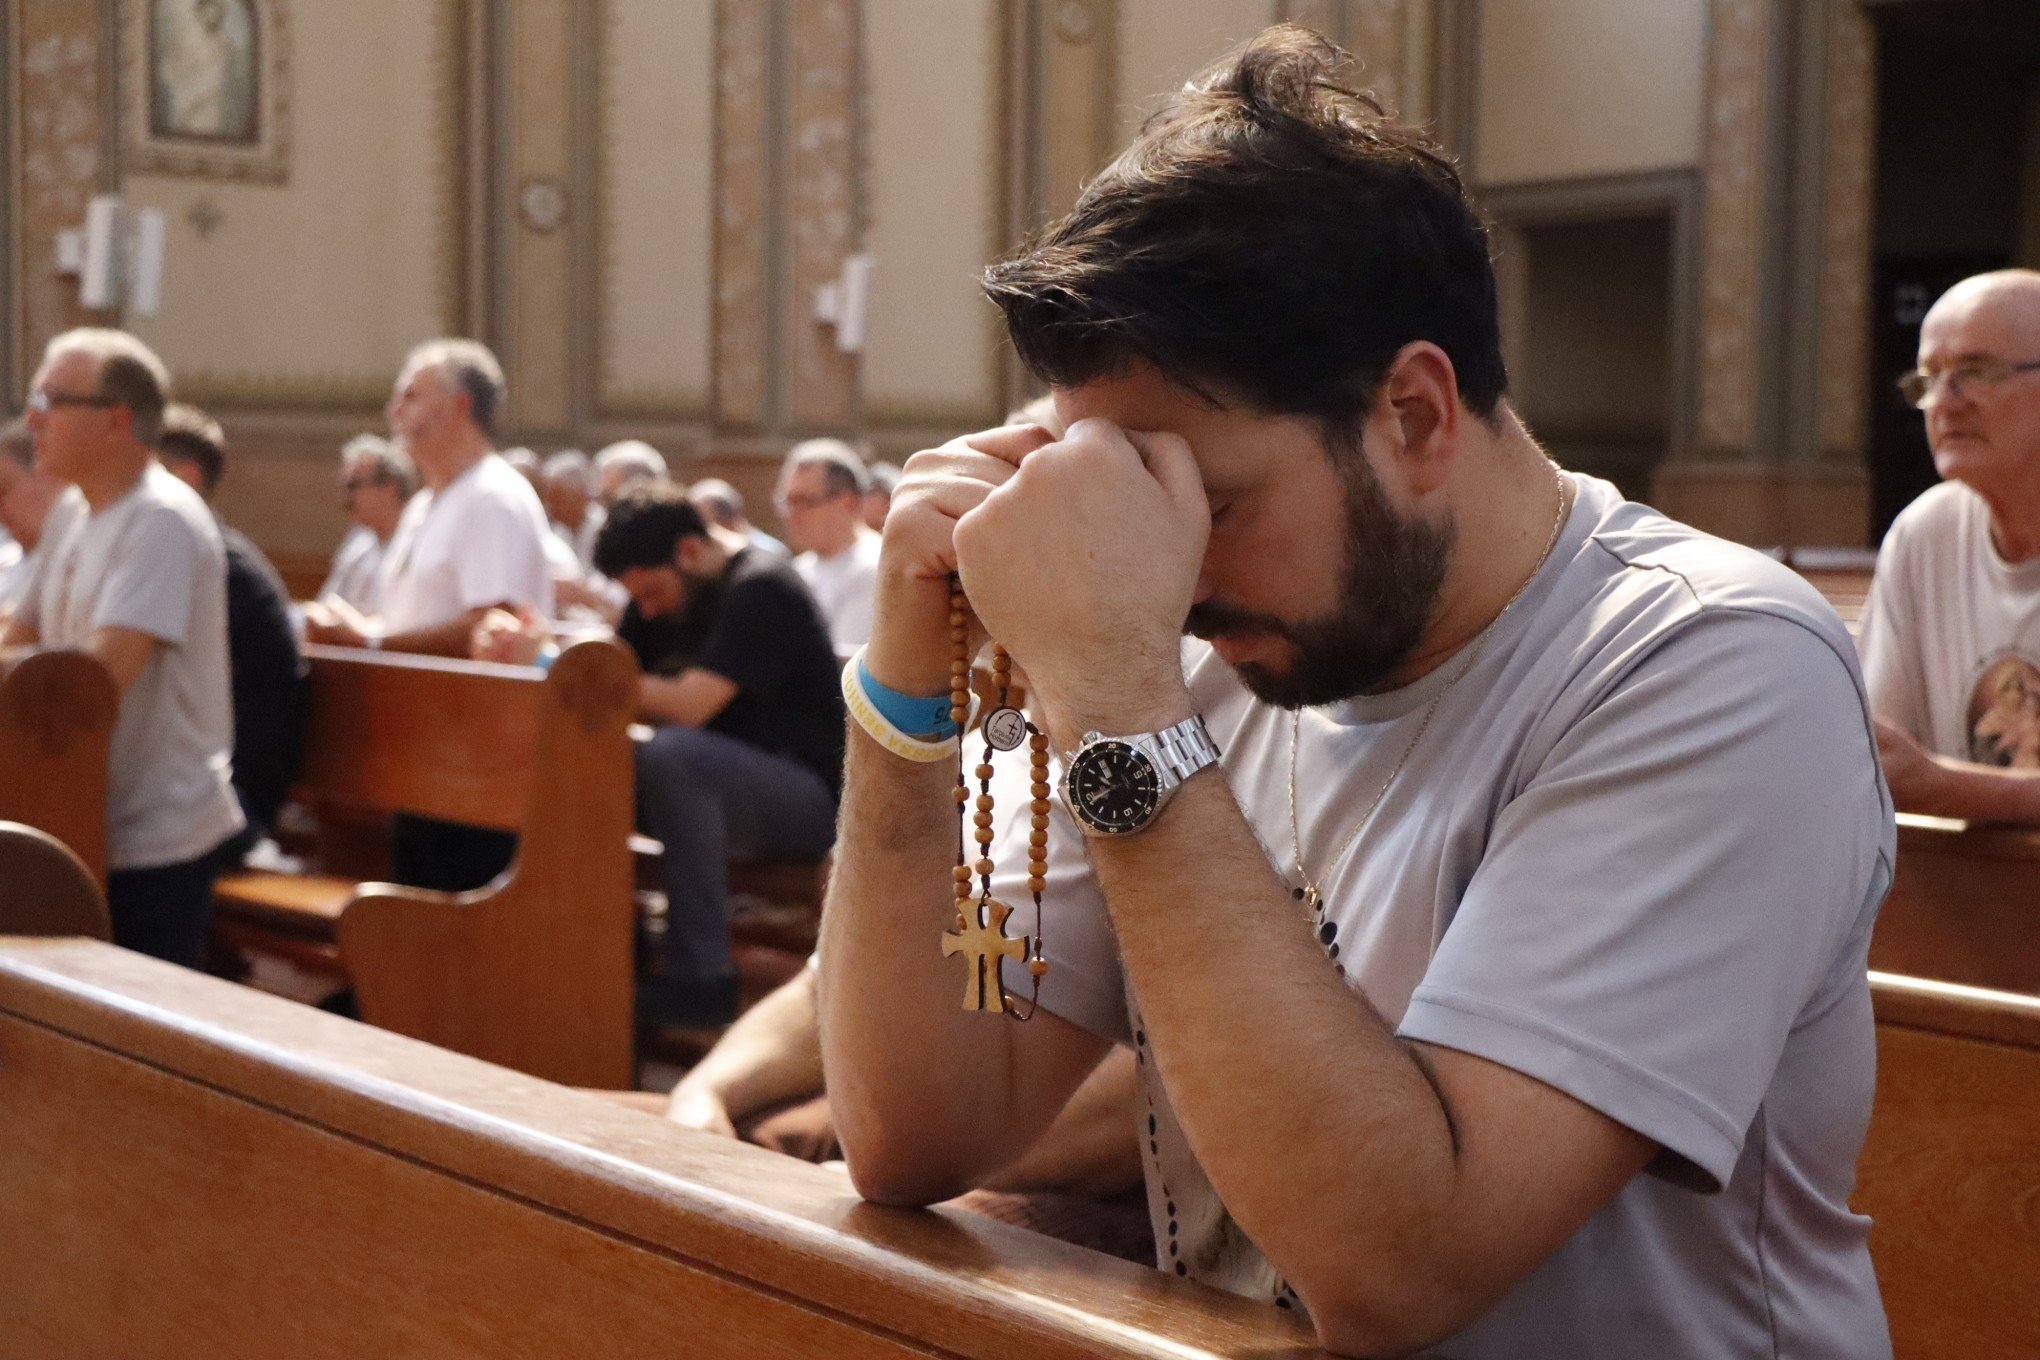 Encontro reaproxima homens da Igreja: "É como se eu renovasse minha fé toda semana"